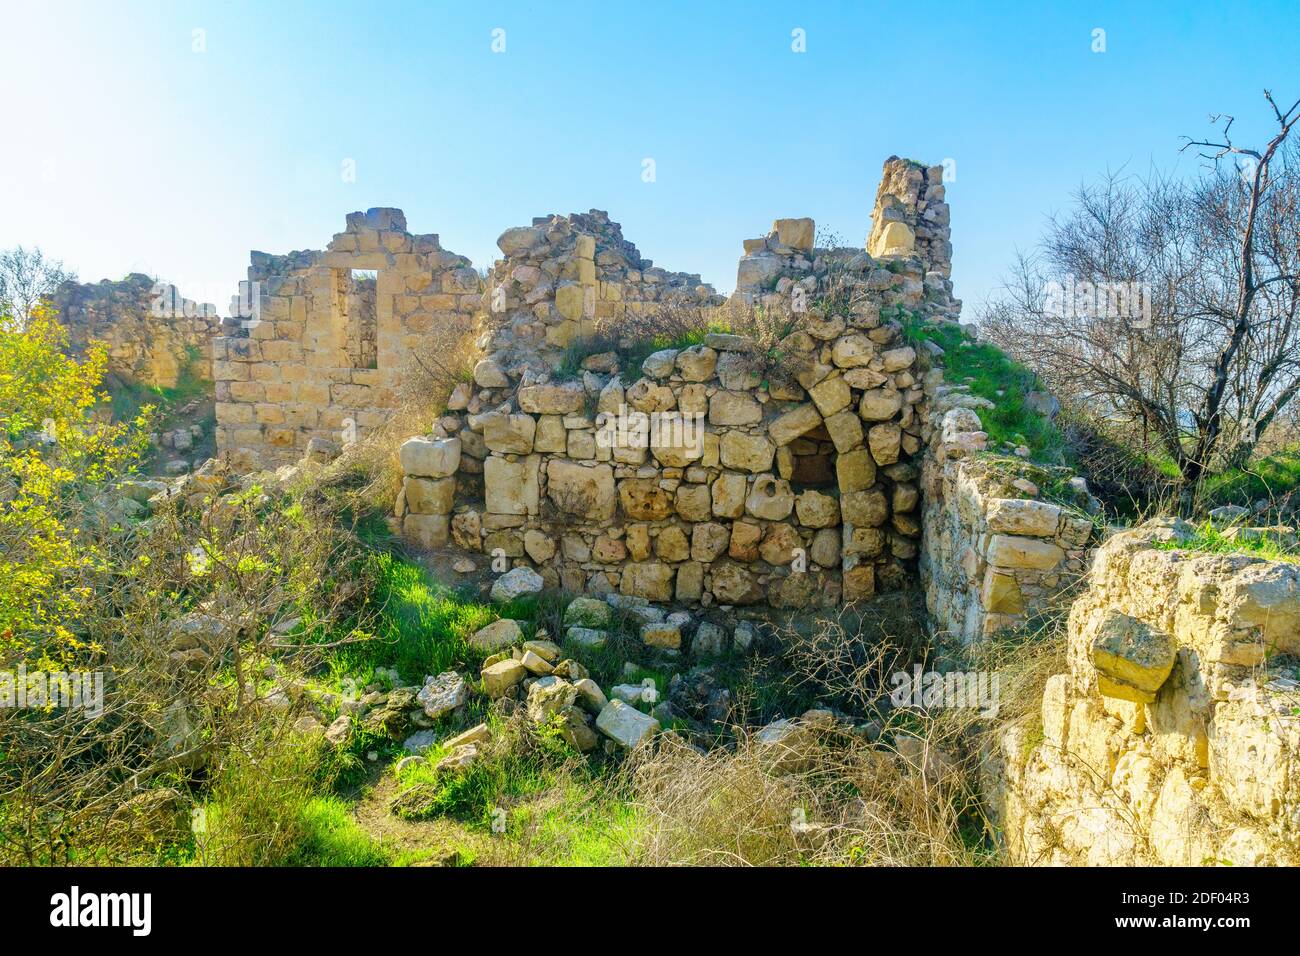 Ansicht der antiken Ruinen in der archäologischen Stätte Tel Tzuba, mit Resten einer prominenten Kuppel, einem arabischen Dorf und einer Kreuzritterfestung in Jerusalem Stockfoto